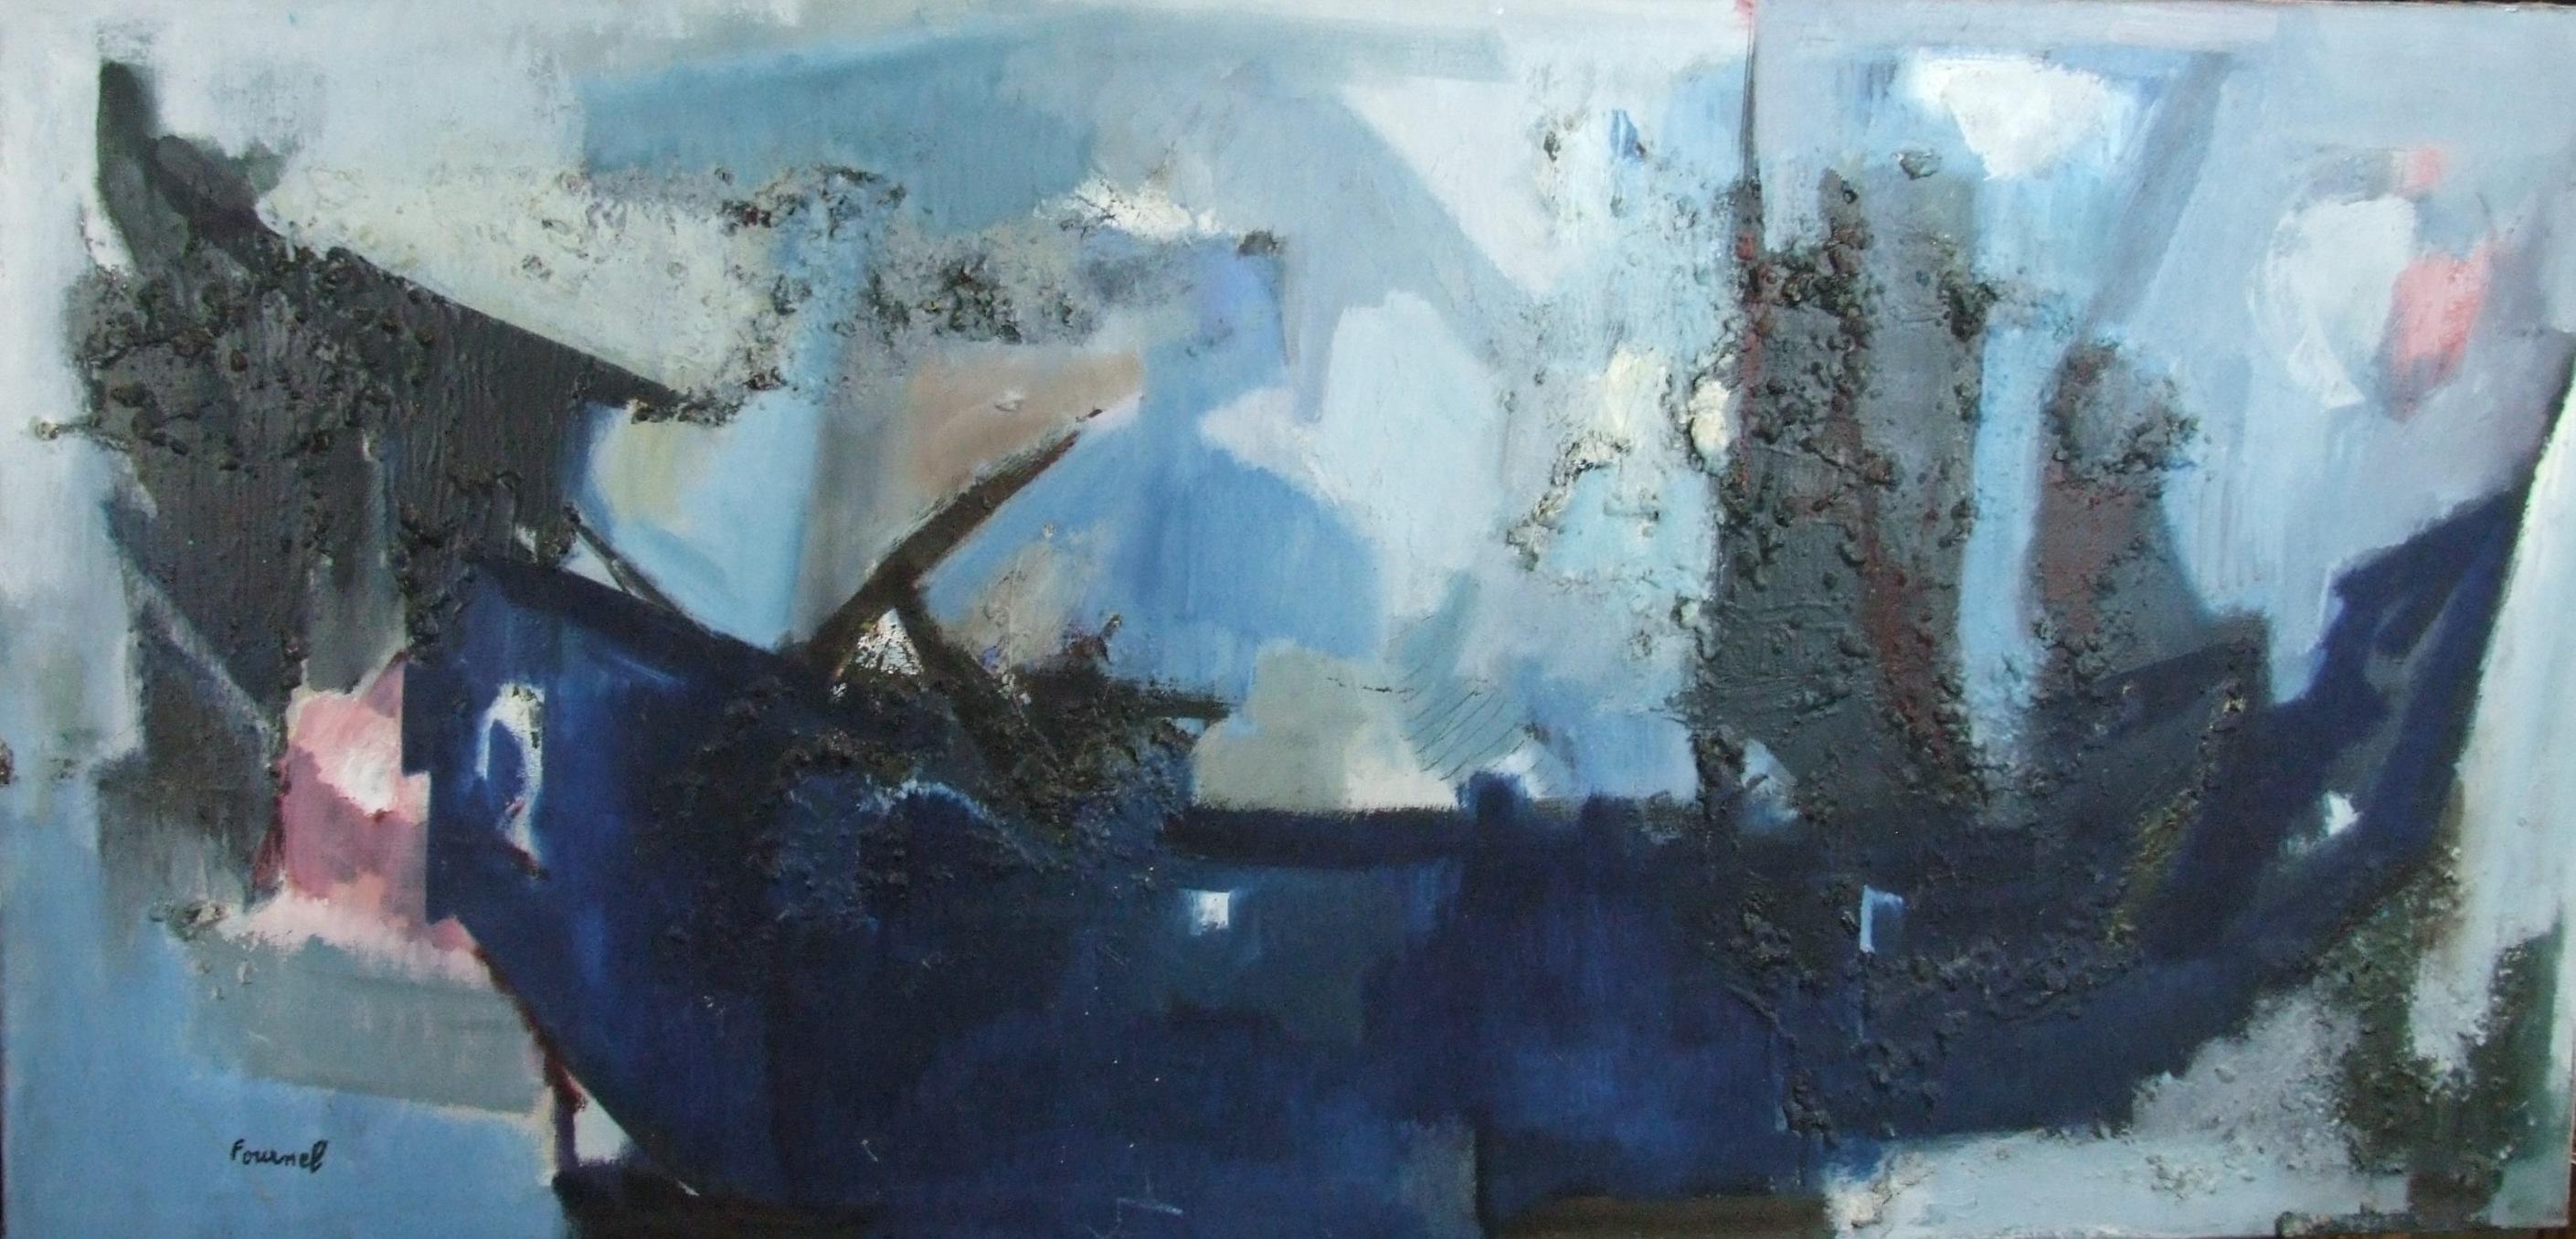 Paule FOURNEL Abstract Painting - Le bateau bleu, 1972 - oil paint, 65x135 cm.